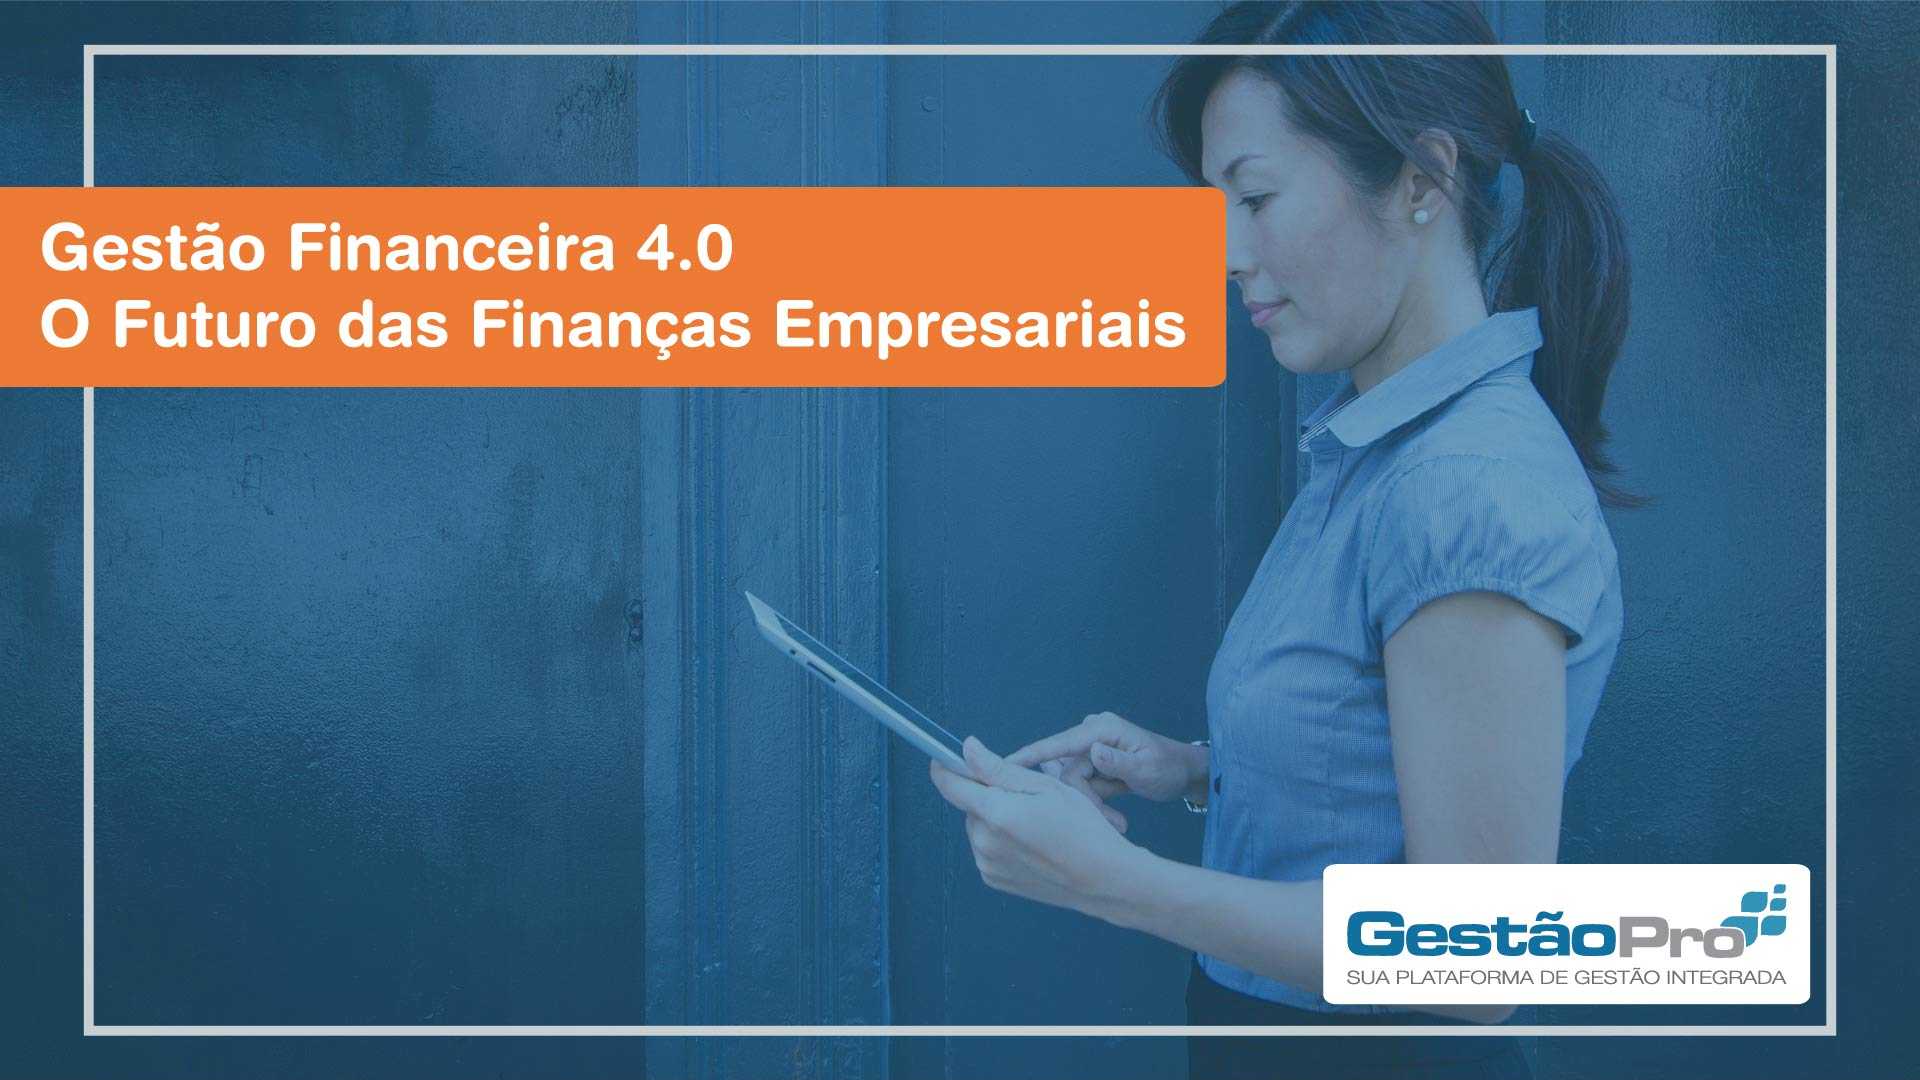 Gestão Financeira 4.0 - O Futuro das Finanças Empresariais